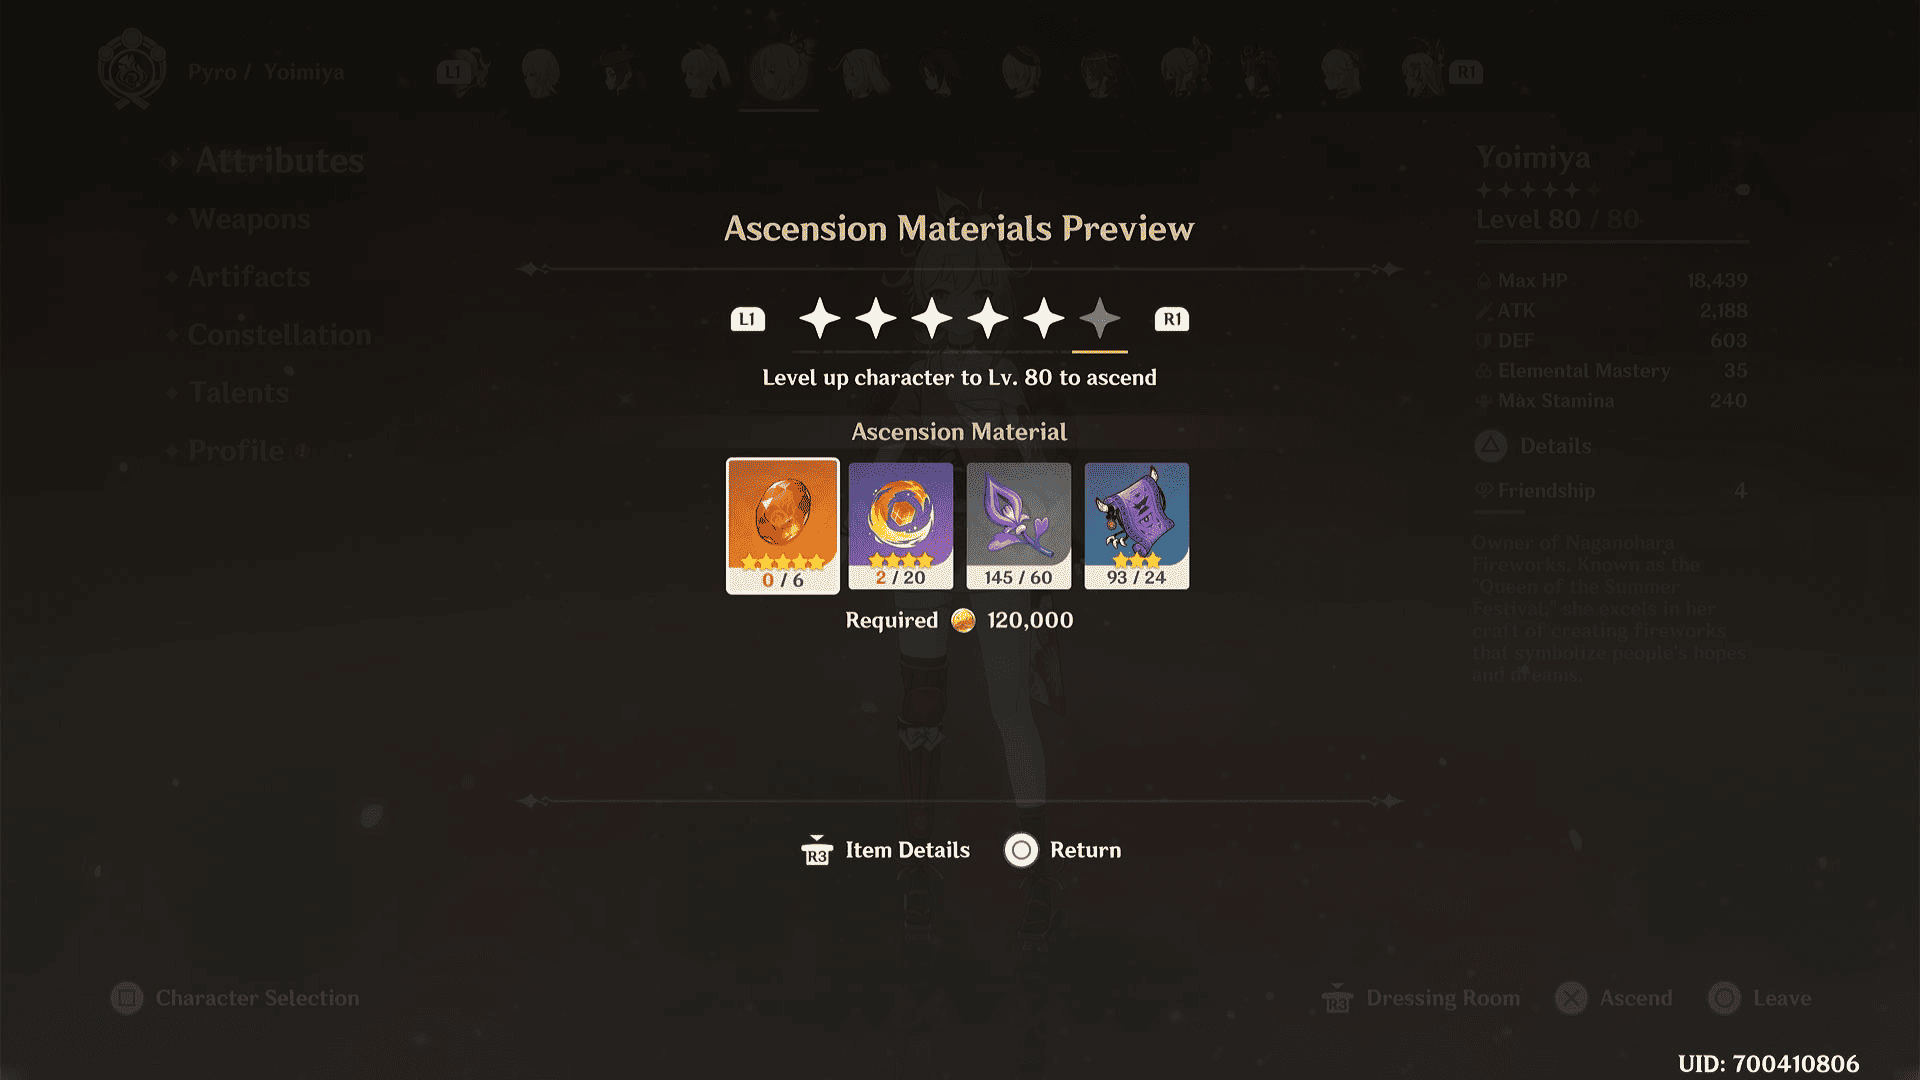 Yoimiya Ascension materials in the character menu